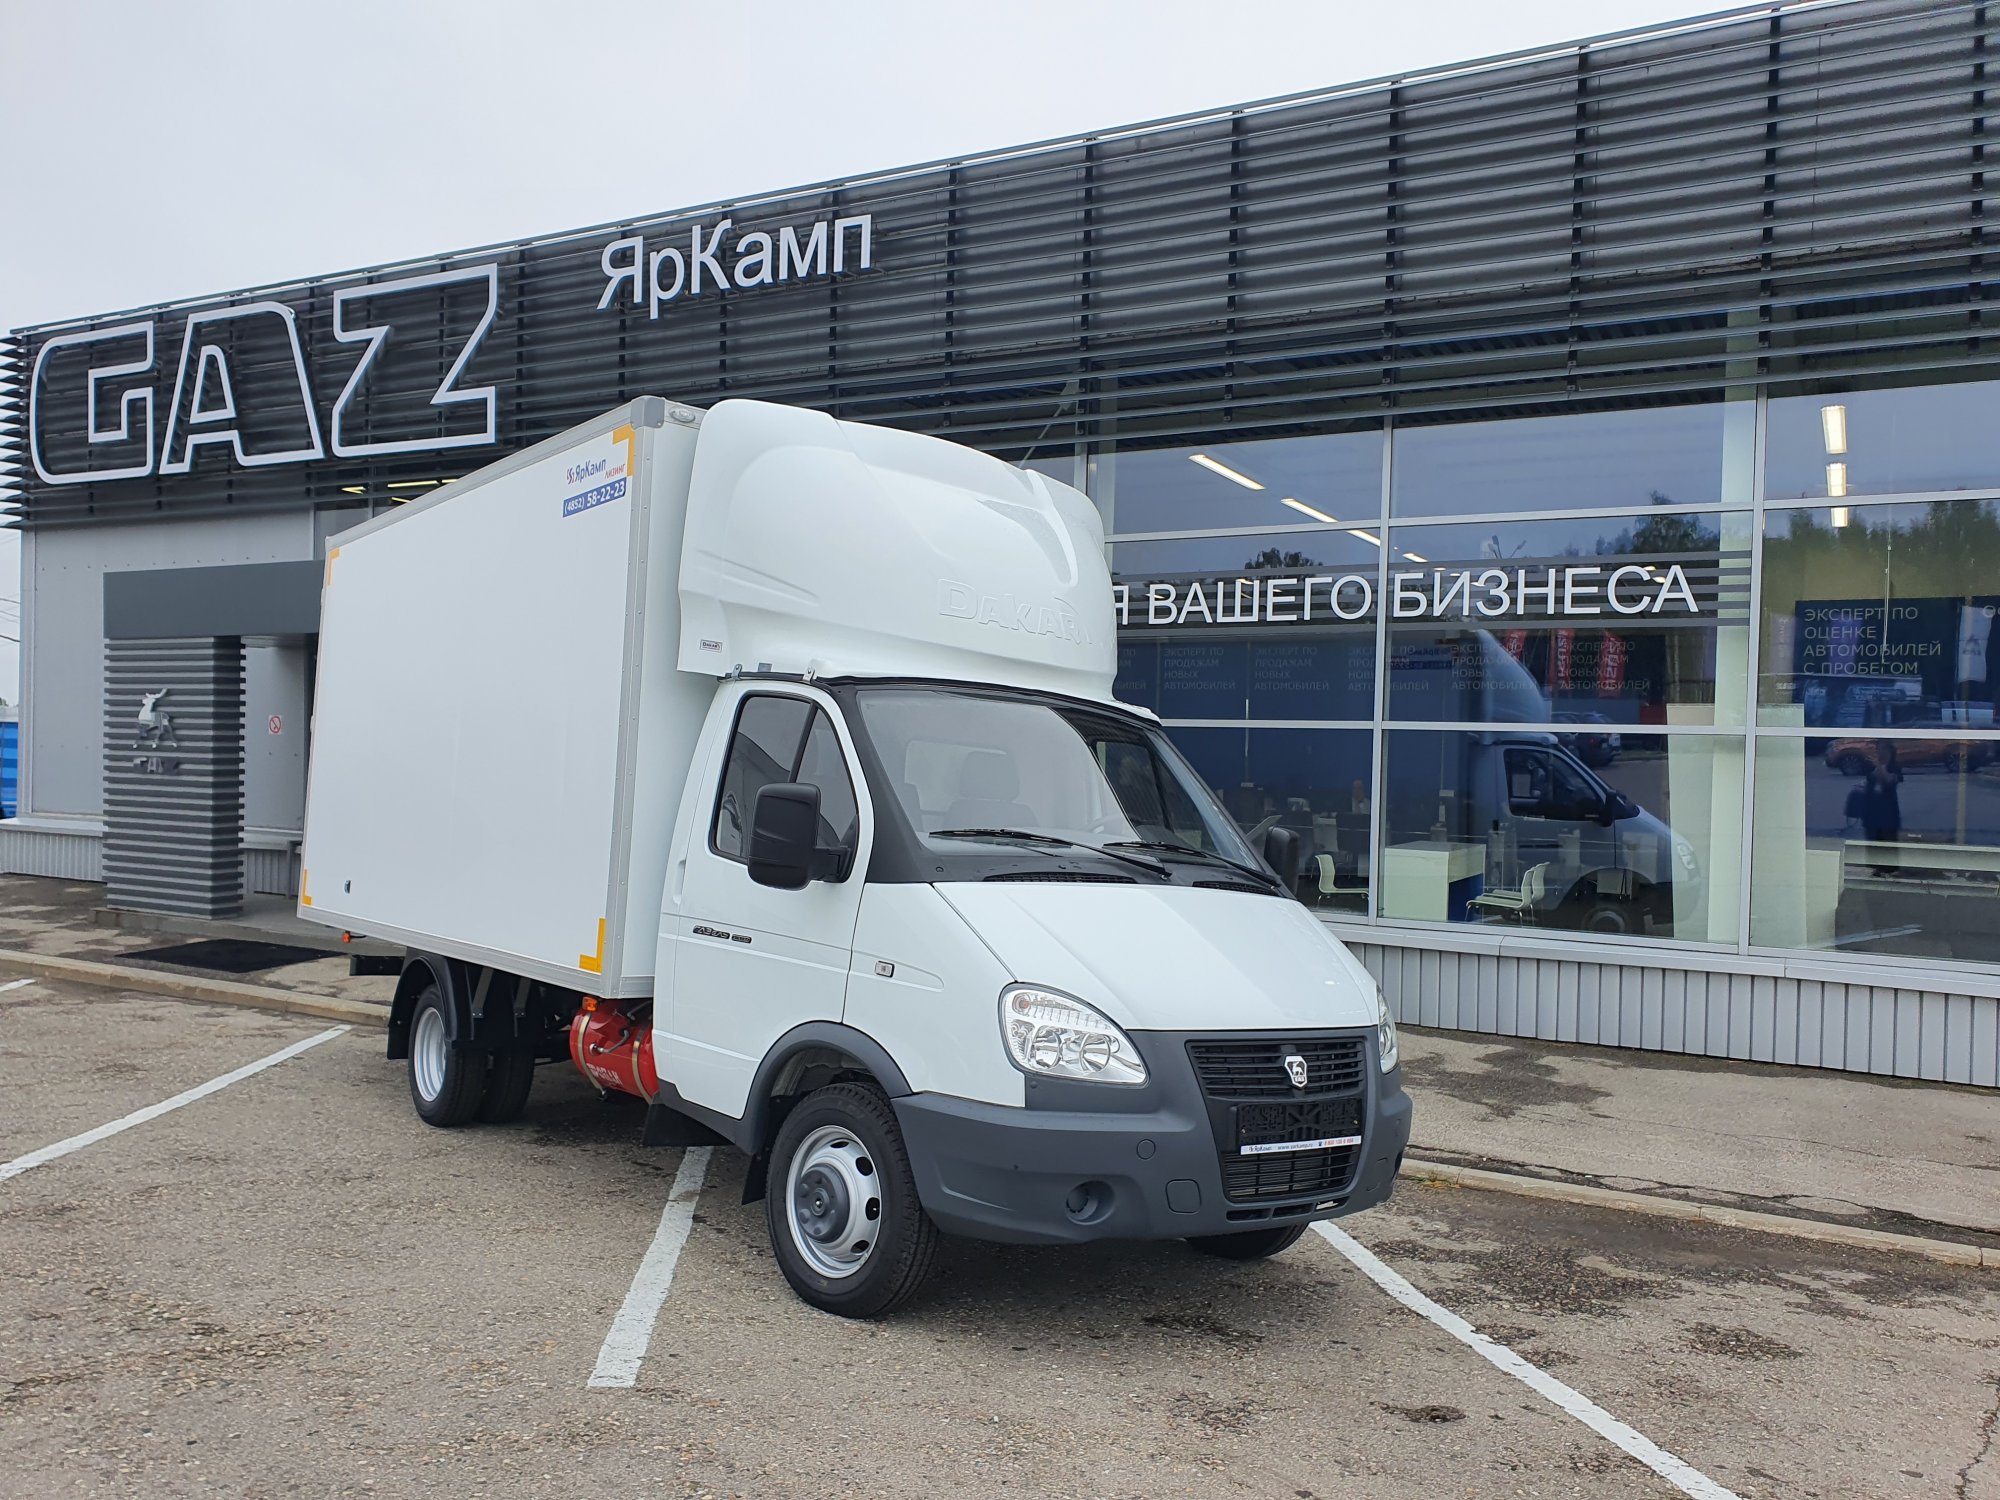 Специализированный изотермический фургон на базе ГАЗ 33025 передан в лизинг